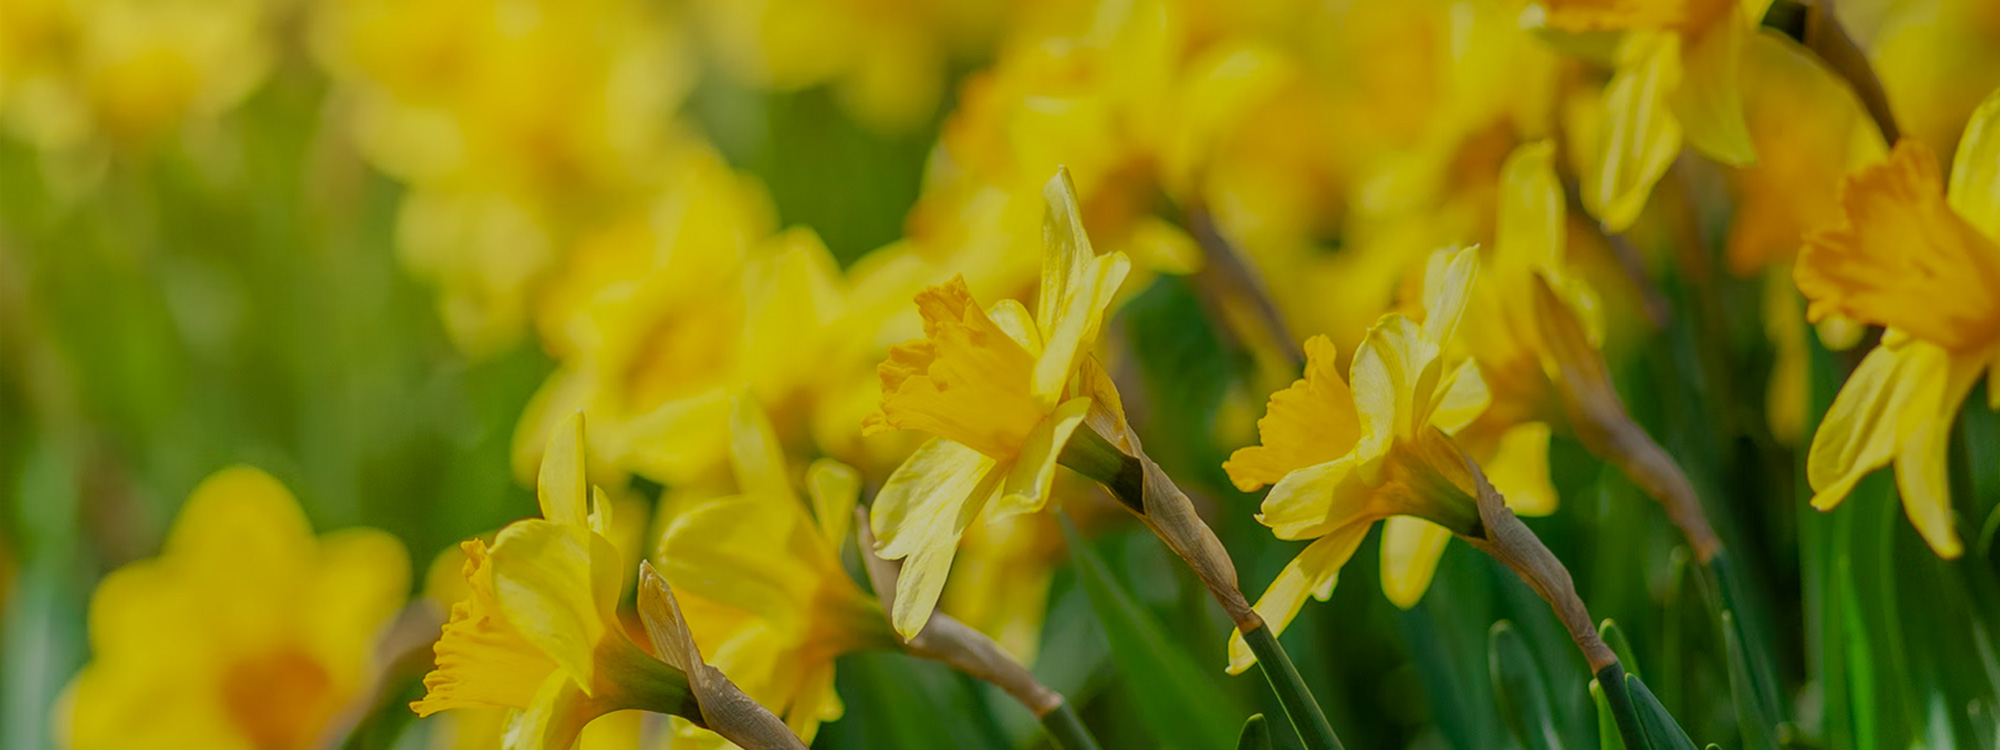 Easter-Daffodils-1-2000x750